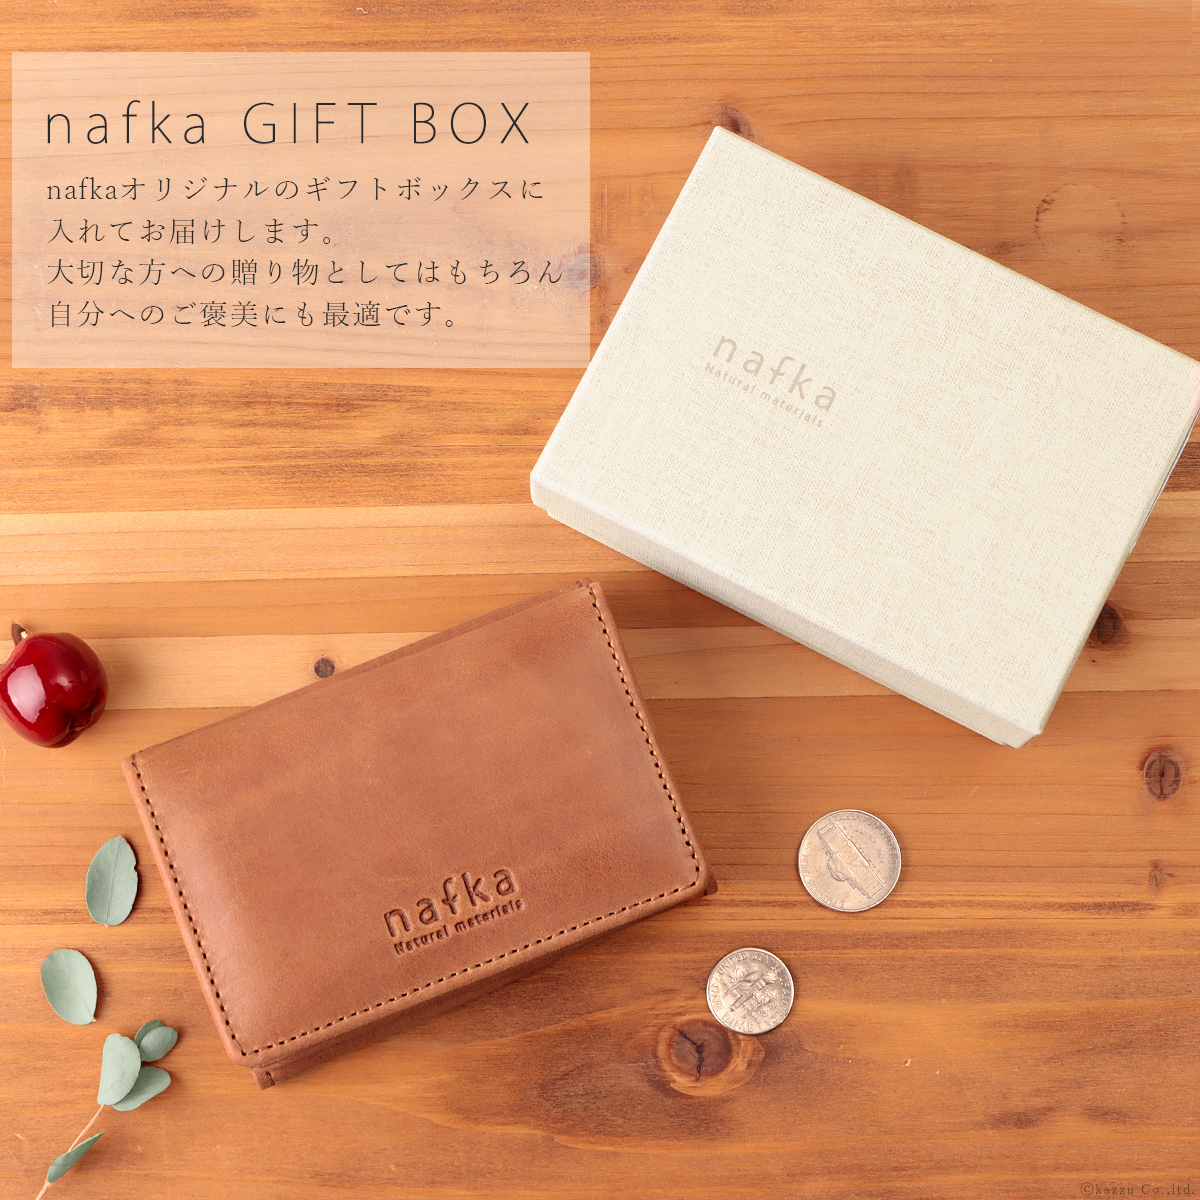 nafka三つ折り財布はプレゼントにおすすめです